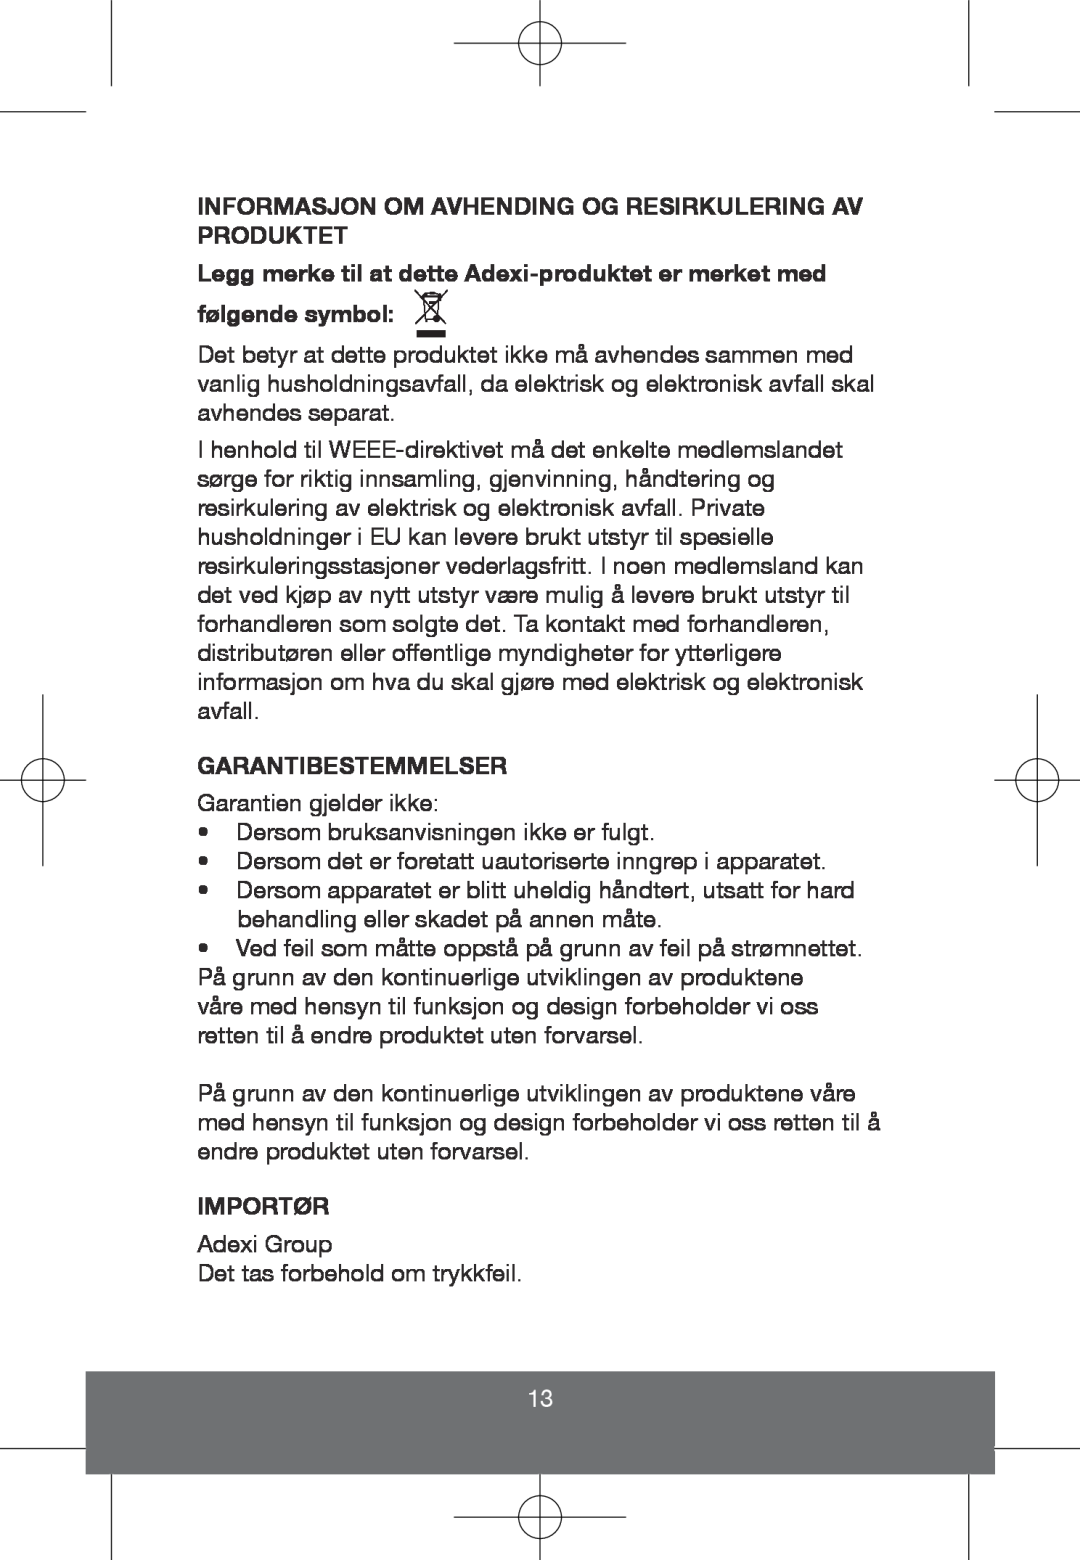 Melissa 635-101 manual Informasjon Om Avhending Og Resirkulering Av Produktet, Garantibestemmelser, Importør 